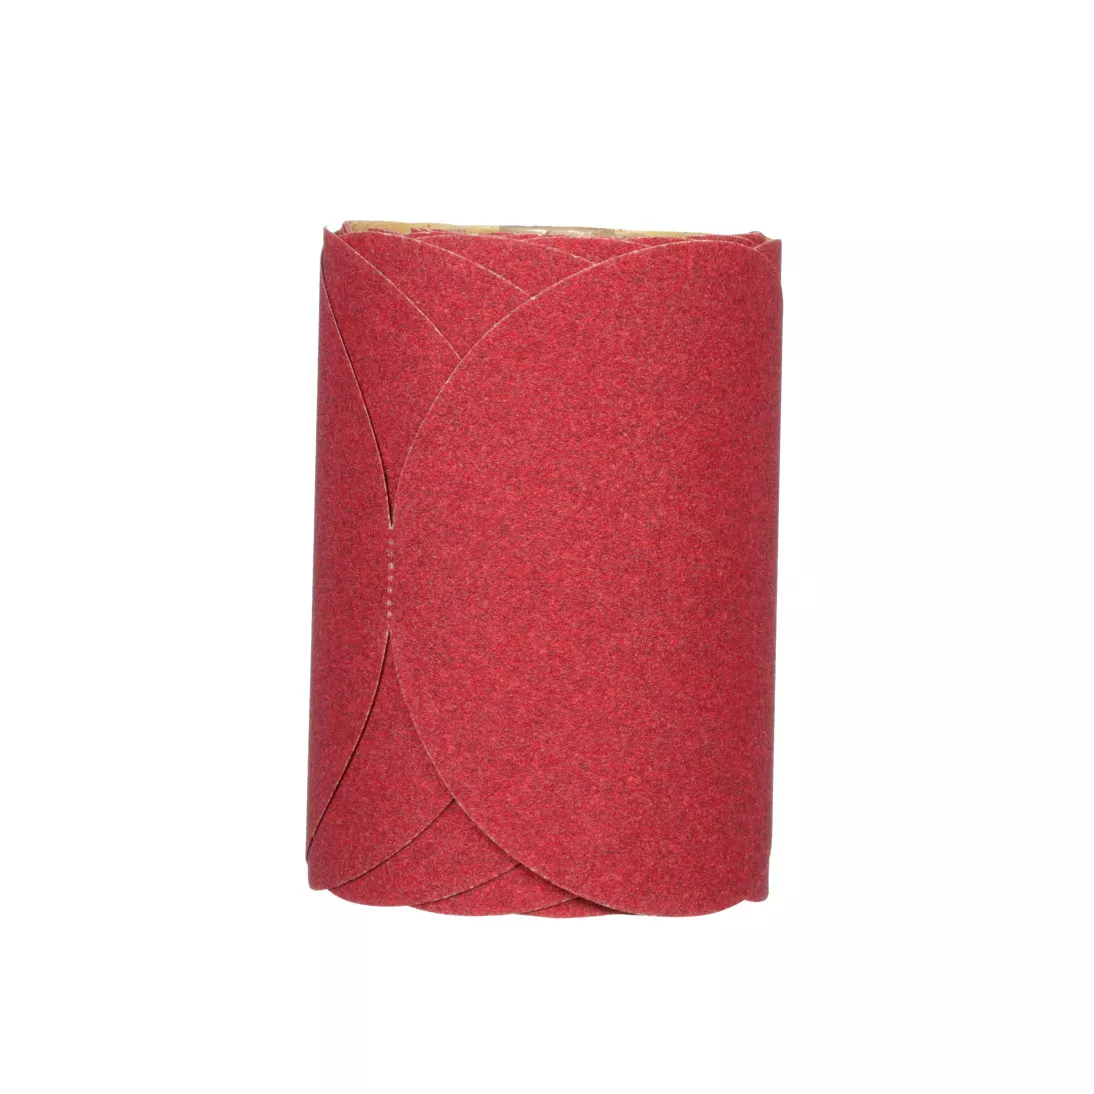 3M™ Red Abrasive Stikit™ Disc, 01116, 6 in, P80, 100 discs per roll, 6
rolls per case